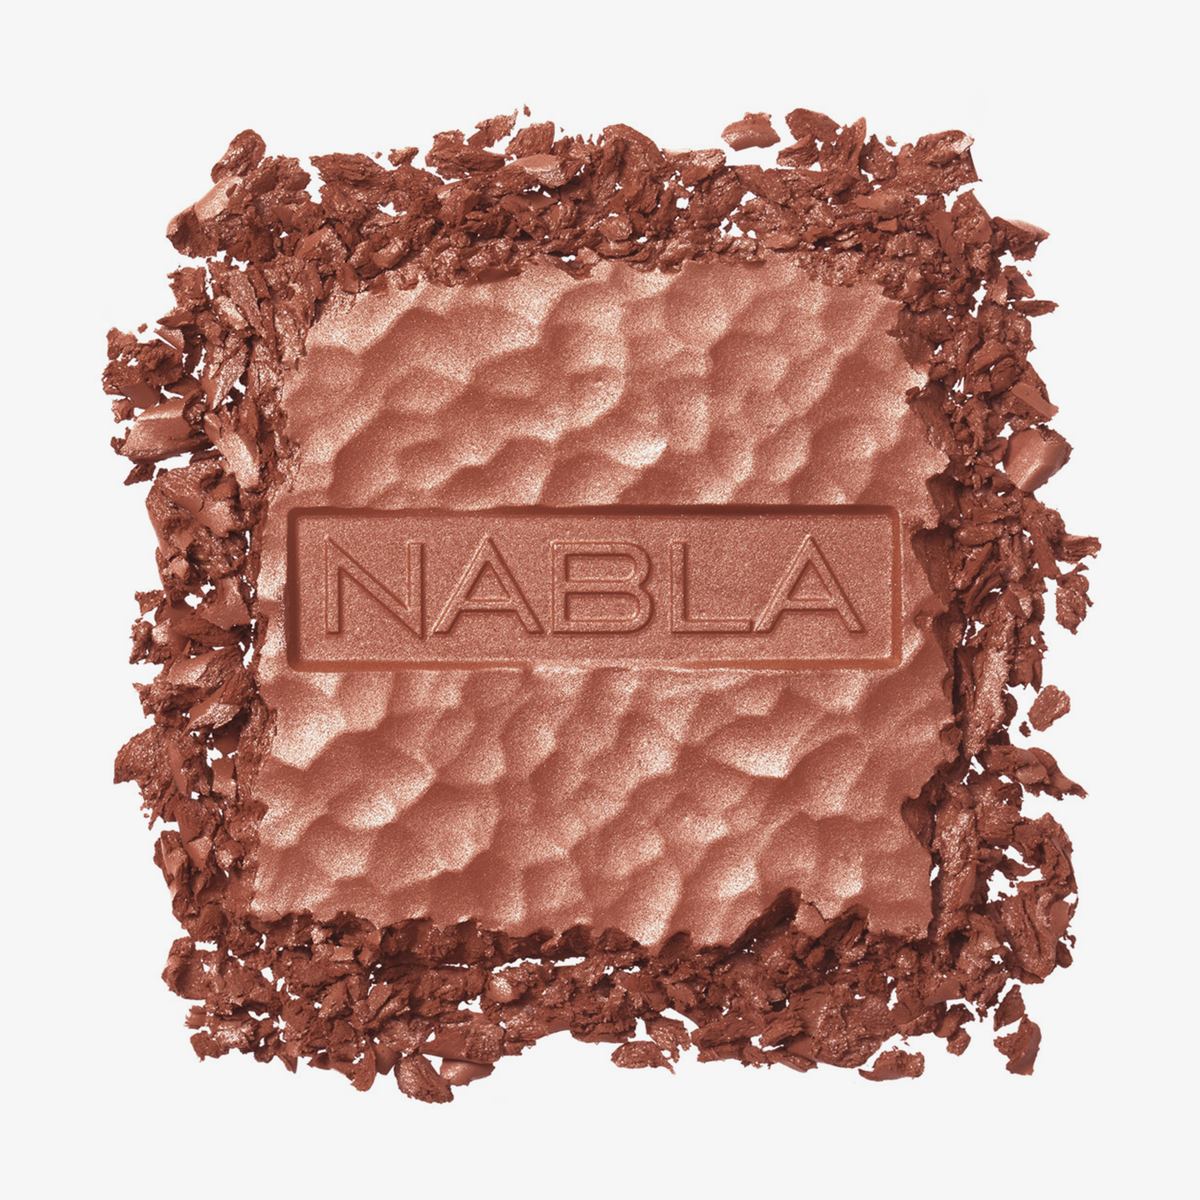 Puder des NABLA Cosmetics Skin Bronzing in der Farbe Dune. Weißer Hintergrund.